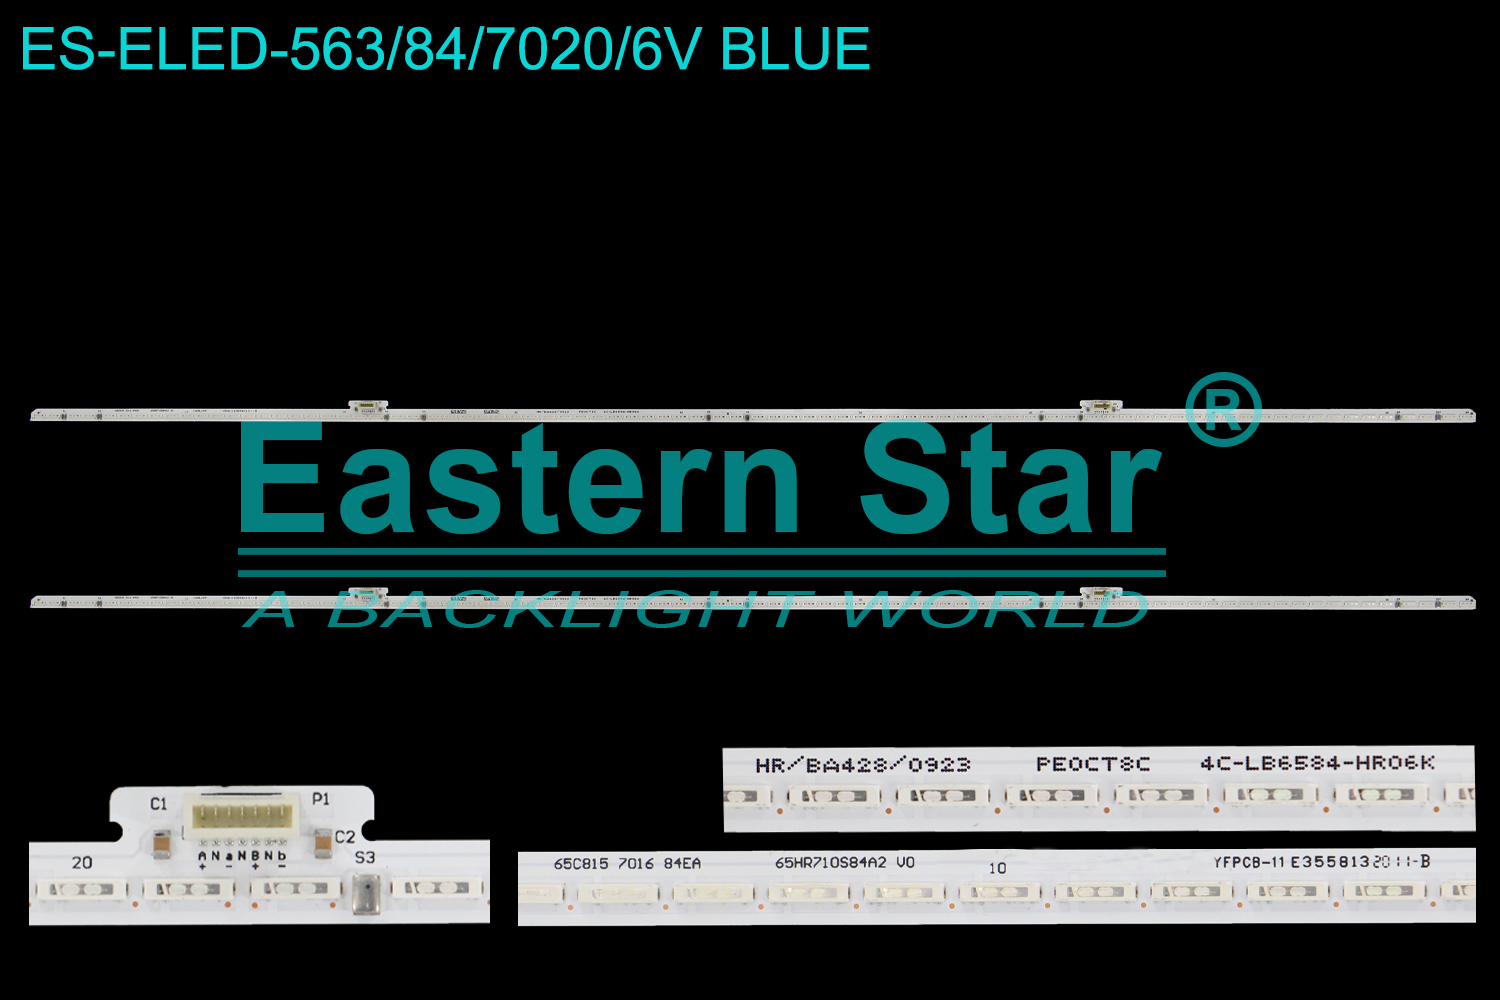 ES-ELED-563 ELED/EDGE TV backlight use for 65'' Tcl /Thomson 65C815  7016 84EA  65HR710S84A2 V0  4C-LB6584-HR06K LED STRIPS(2)